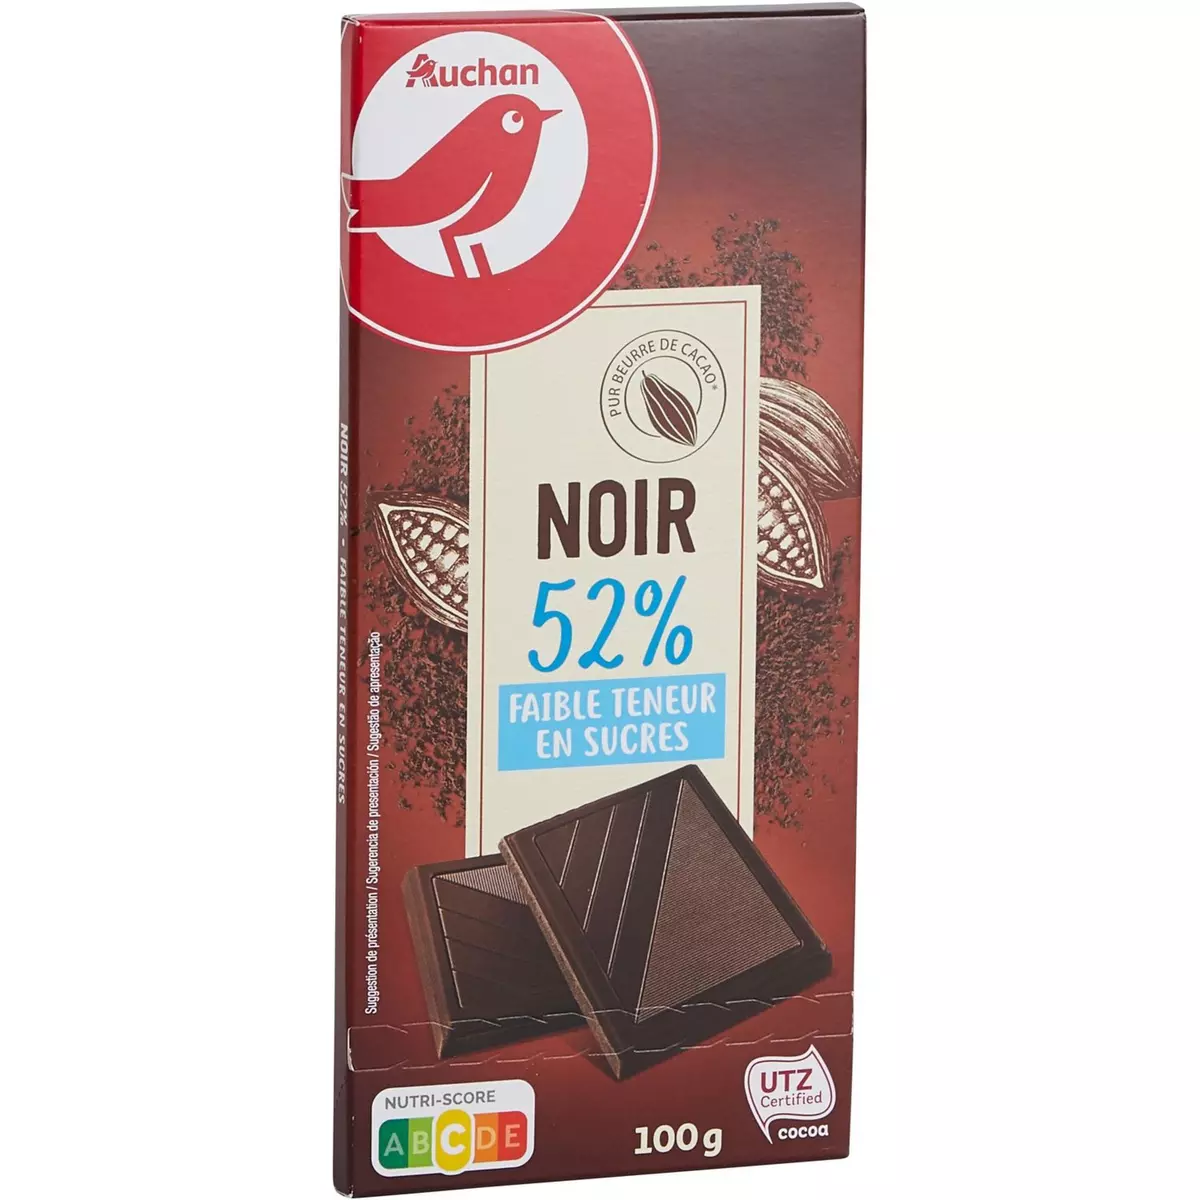 AUCHAN Tablette de chocolat noir dégustation 52% faible teneur en sucres 1 pièce 100g